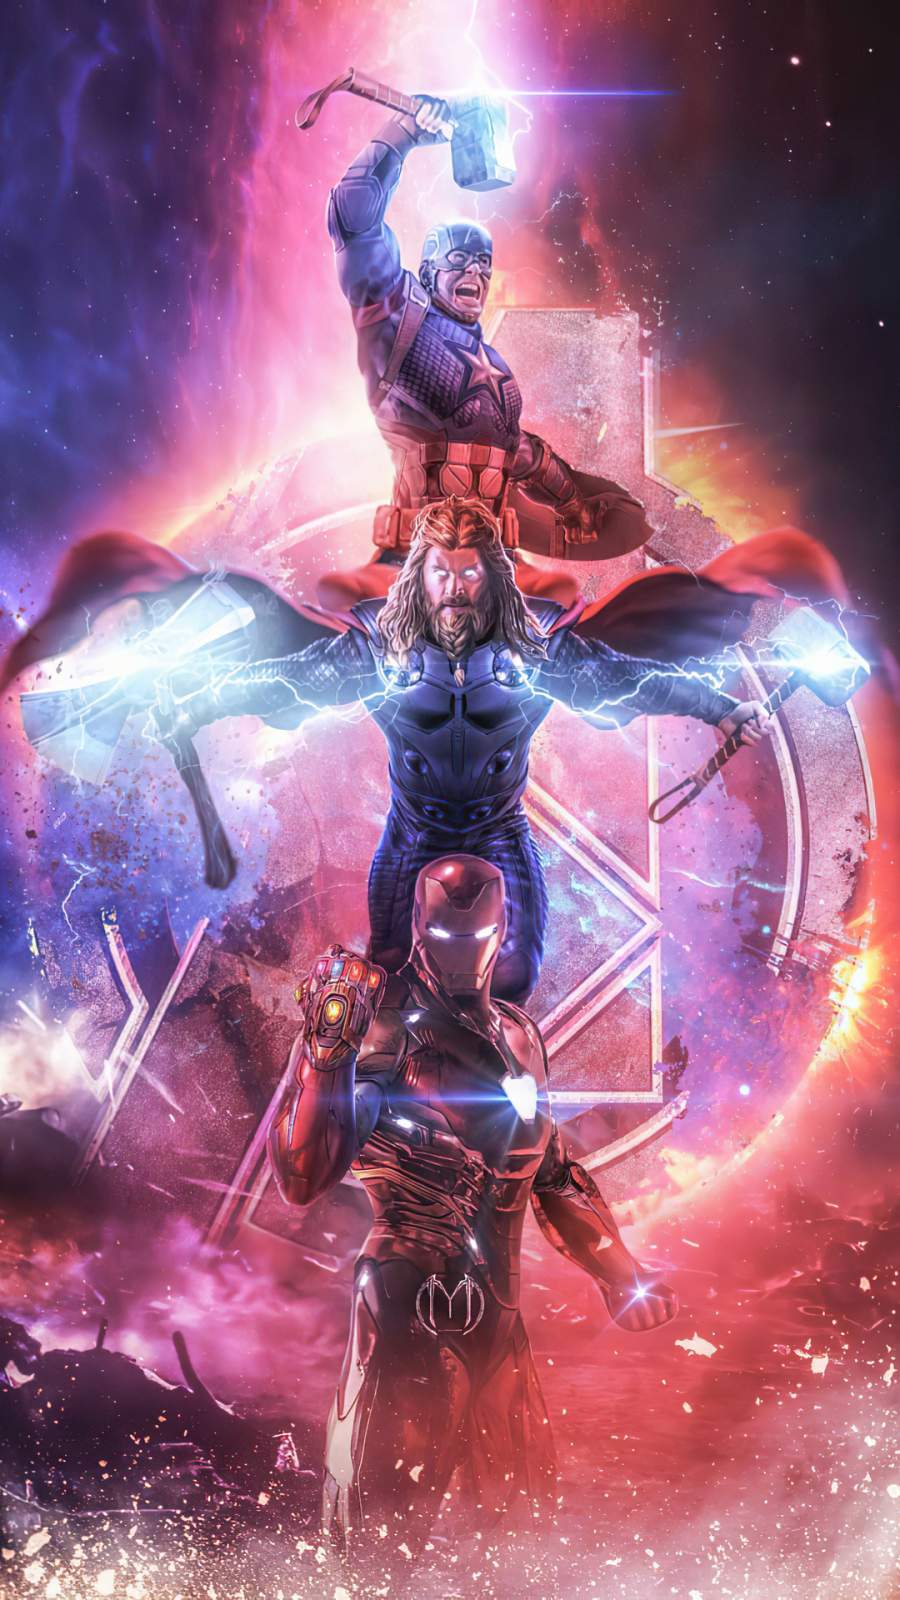 Iron Man Infinity Gauntlet Stones Artwork iPhone Wallpaper